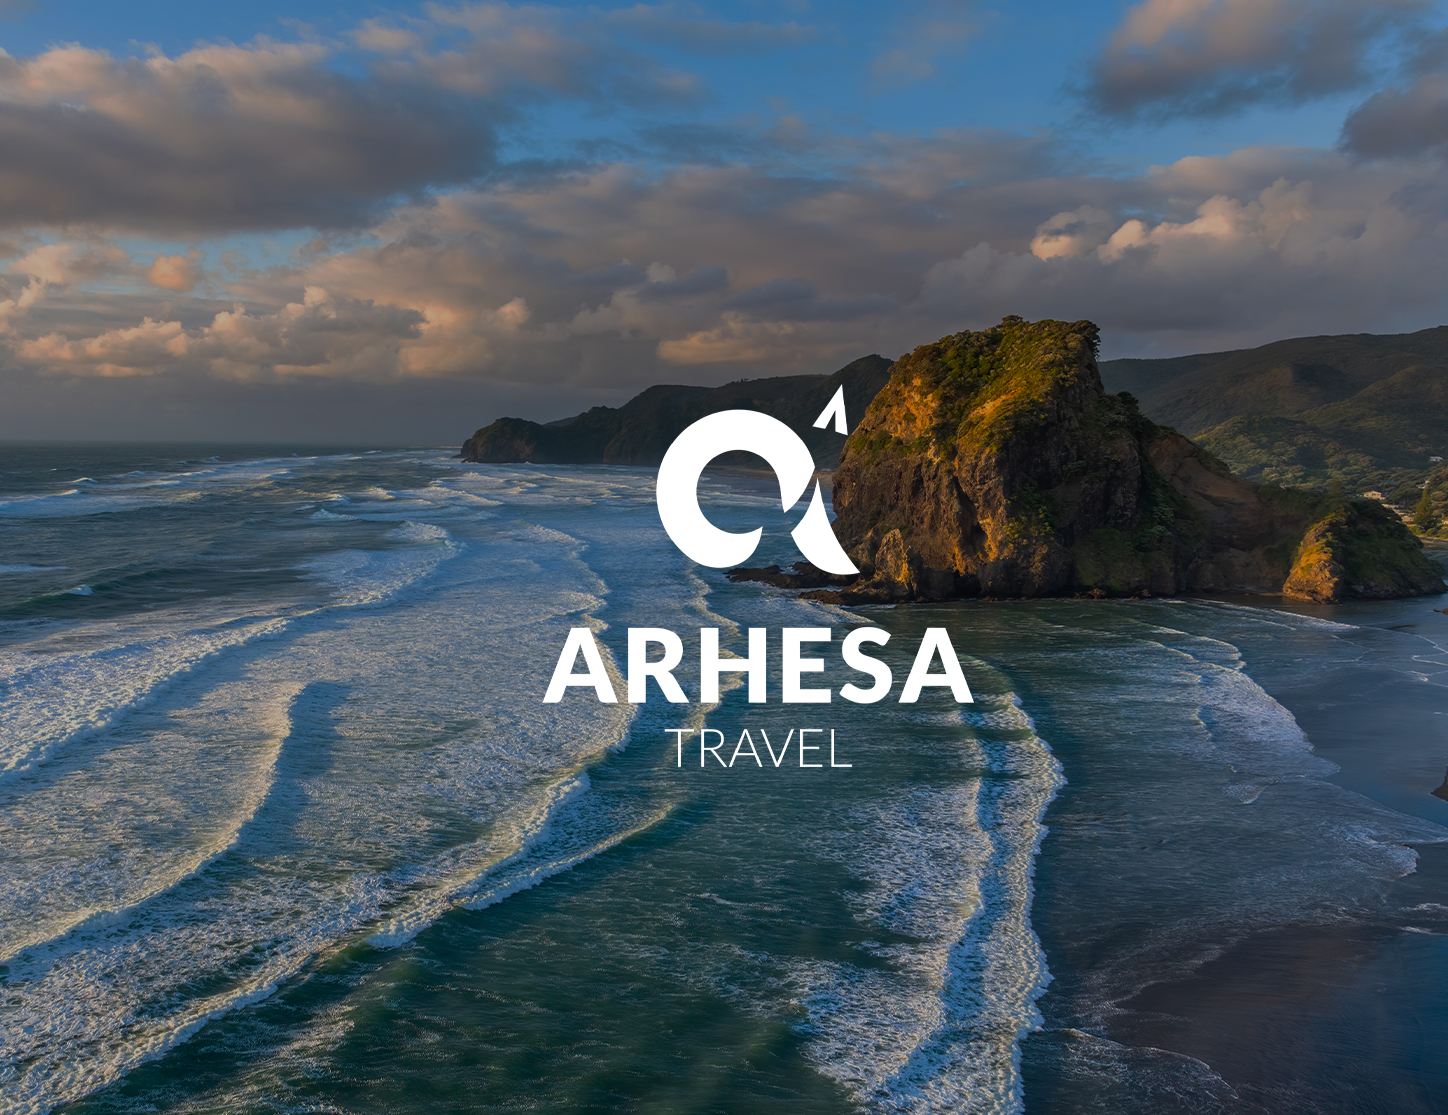 arhesa-travel-cid29